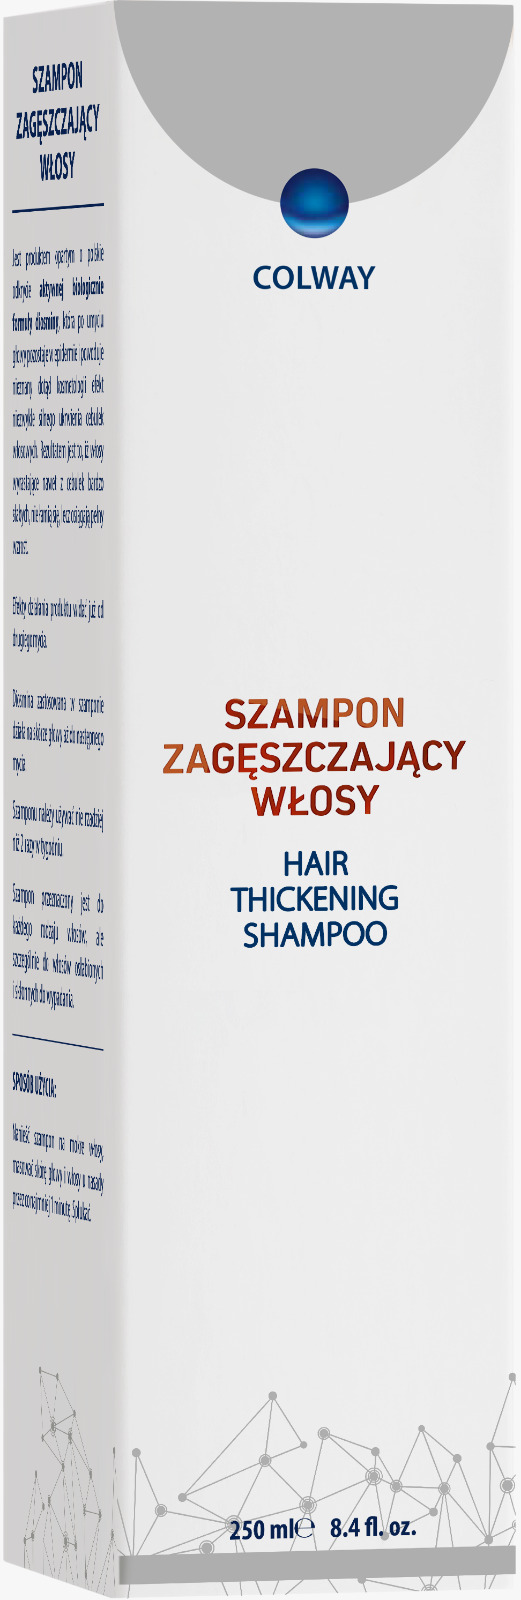 szampon colway apteka